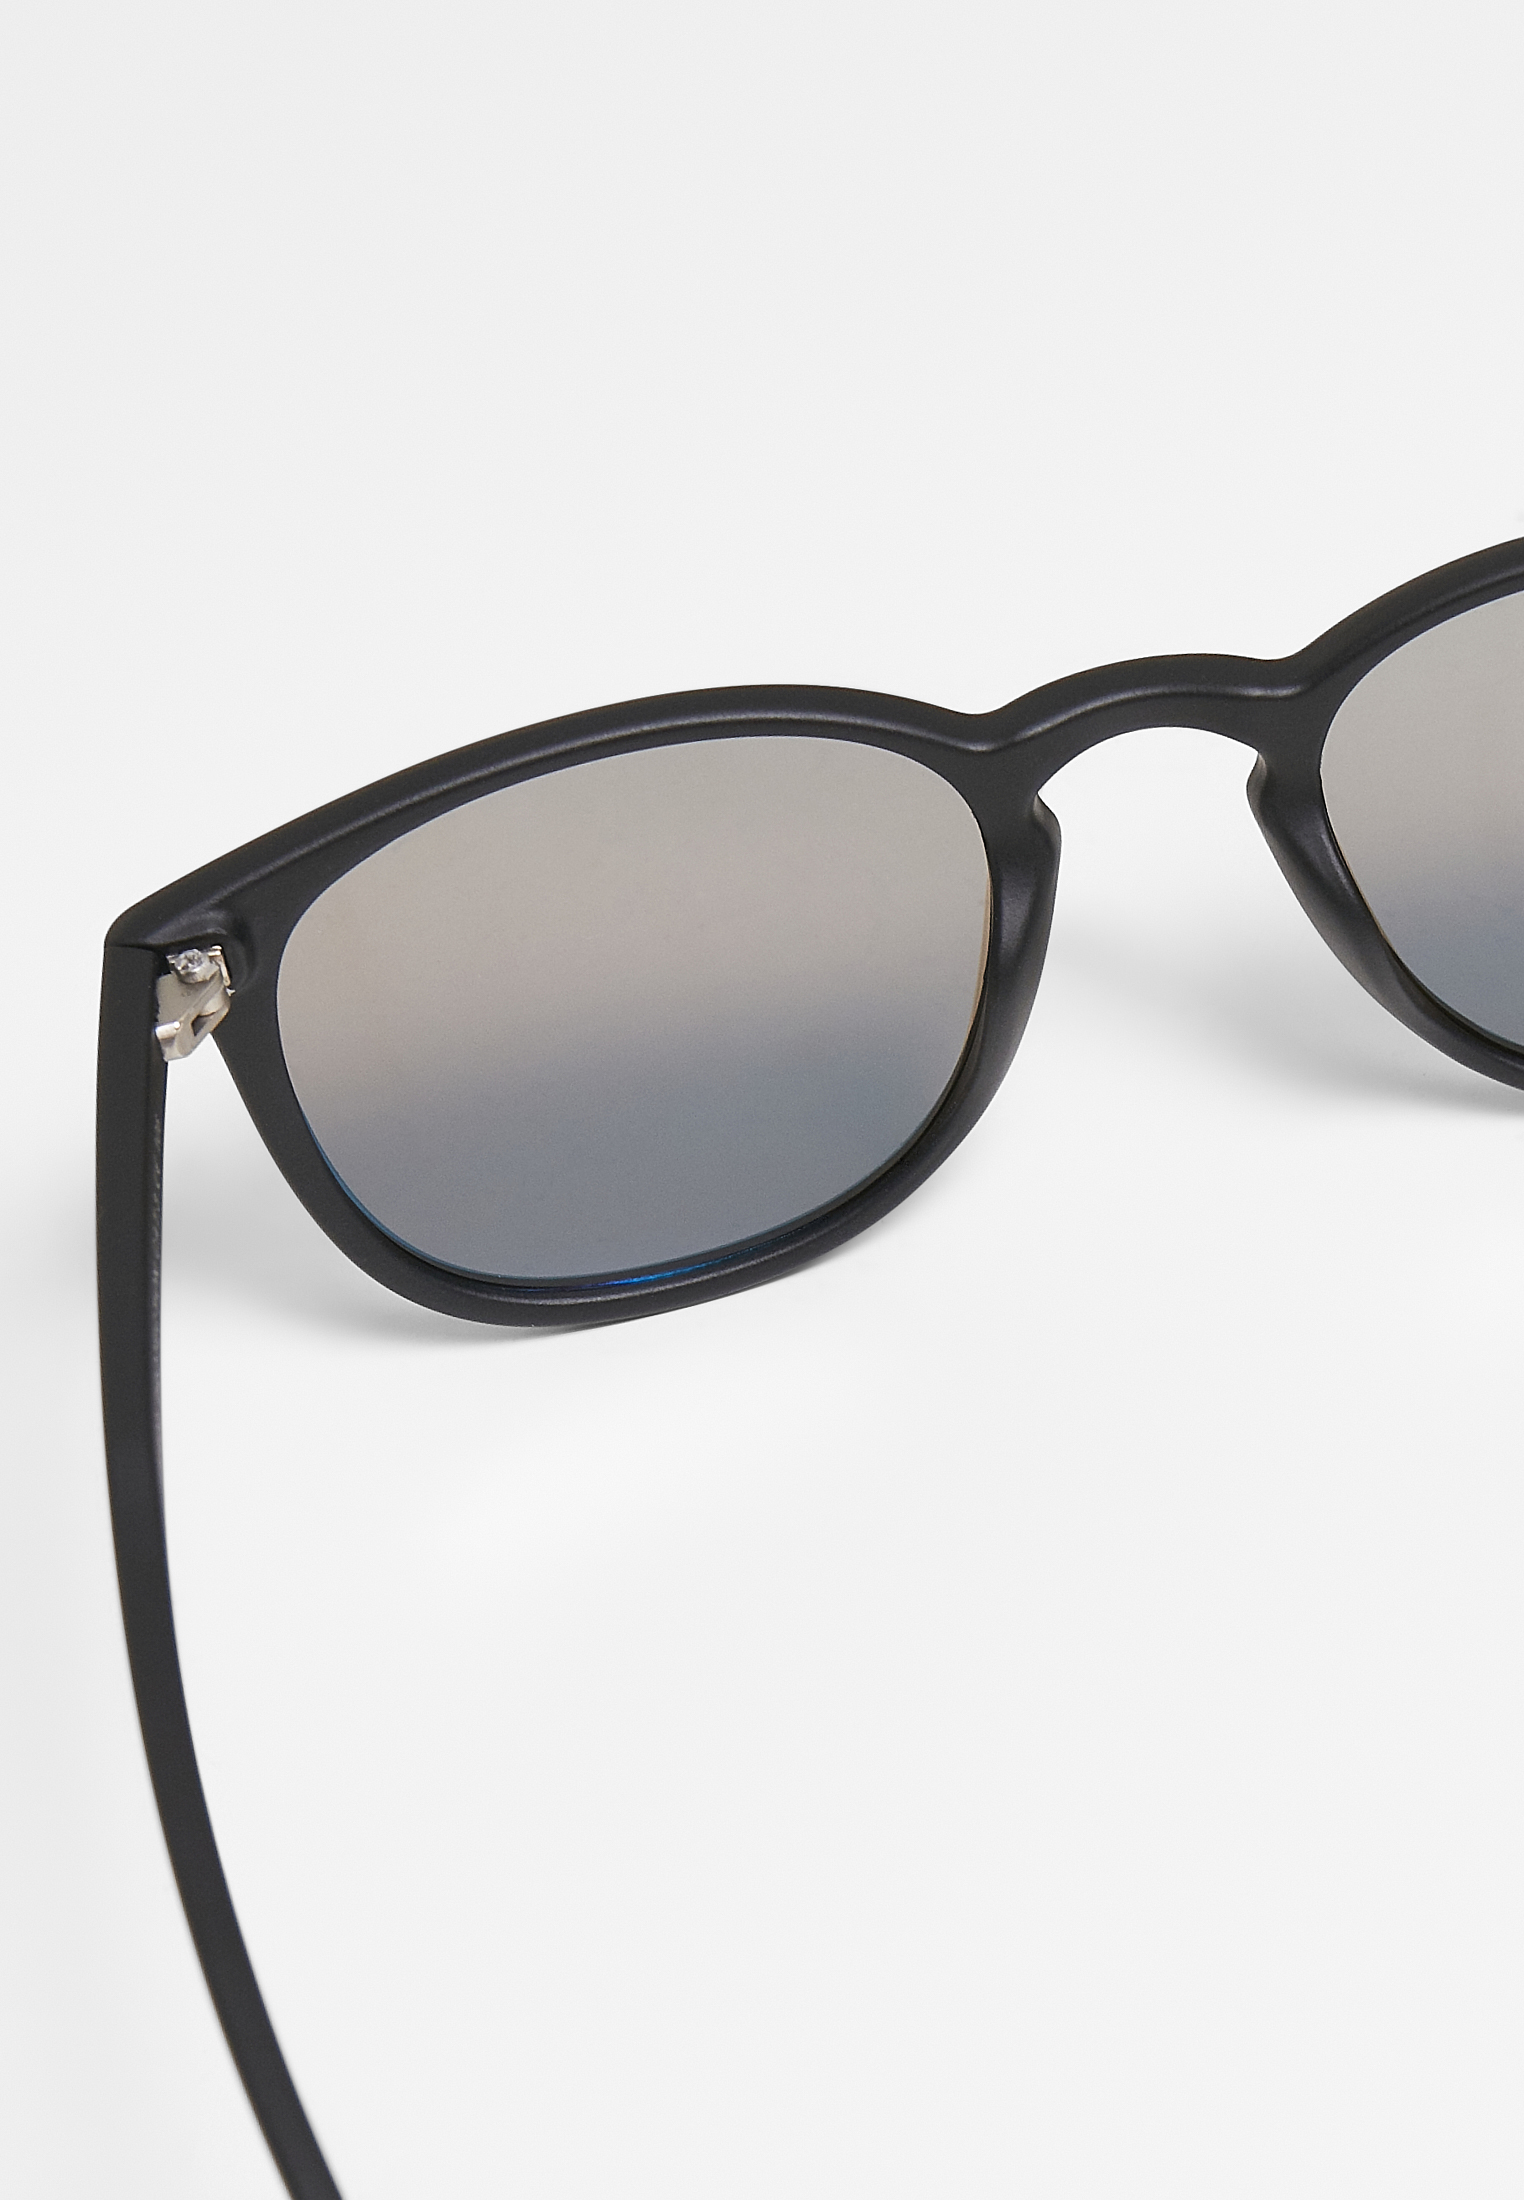 Sonnenbrillen Sunglasses Arthur UC in Farbe black/blue